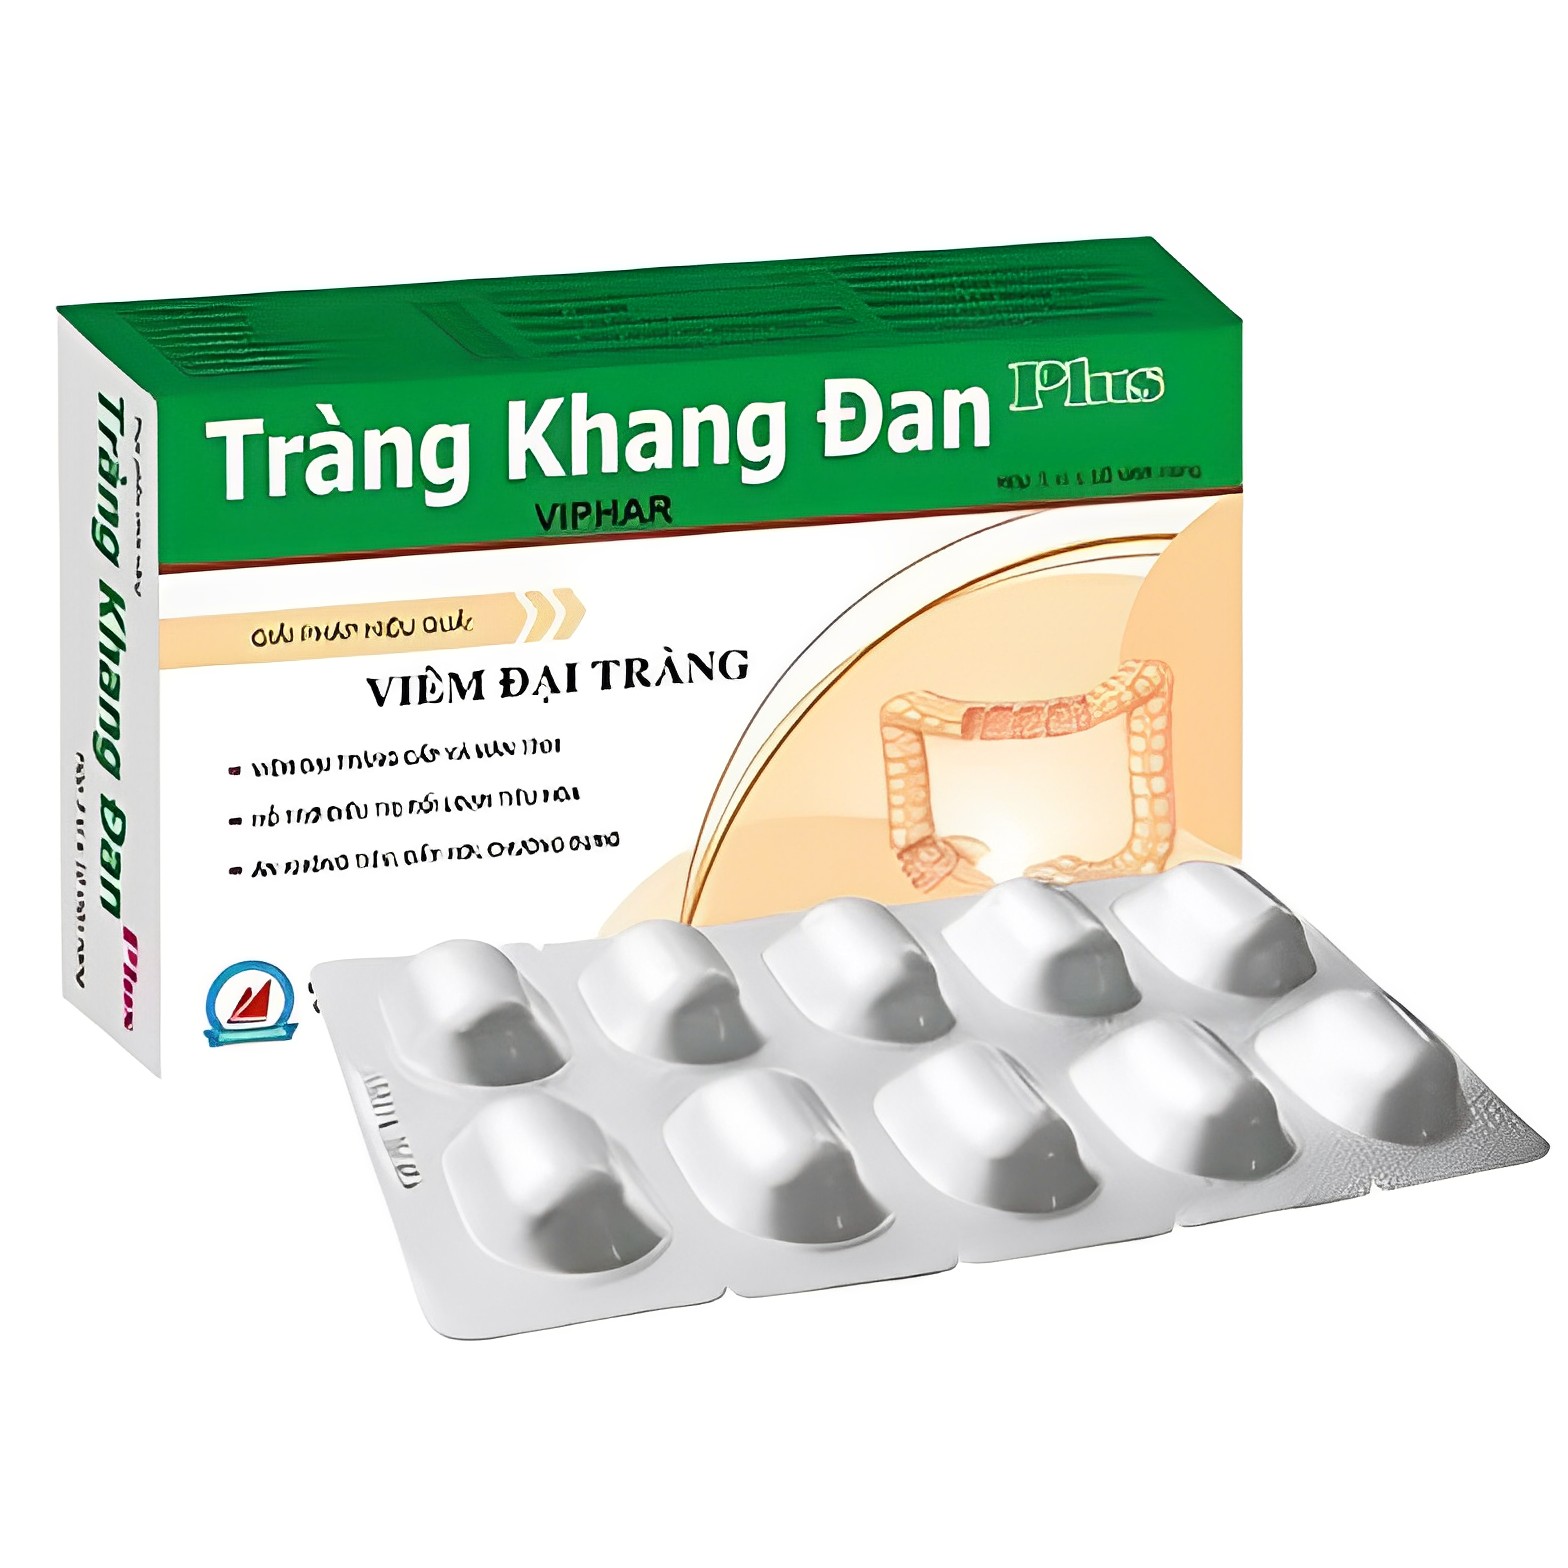 ￼TRÀNG KHANG ĐAN New Vinaphar -Hộp 30 Viên - Giải pháp hiệu quả cho viêm đại tràng, rối loạn tiêu hoá